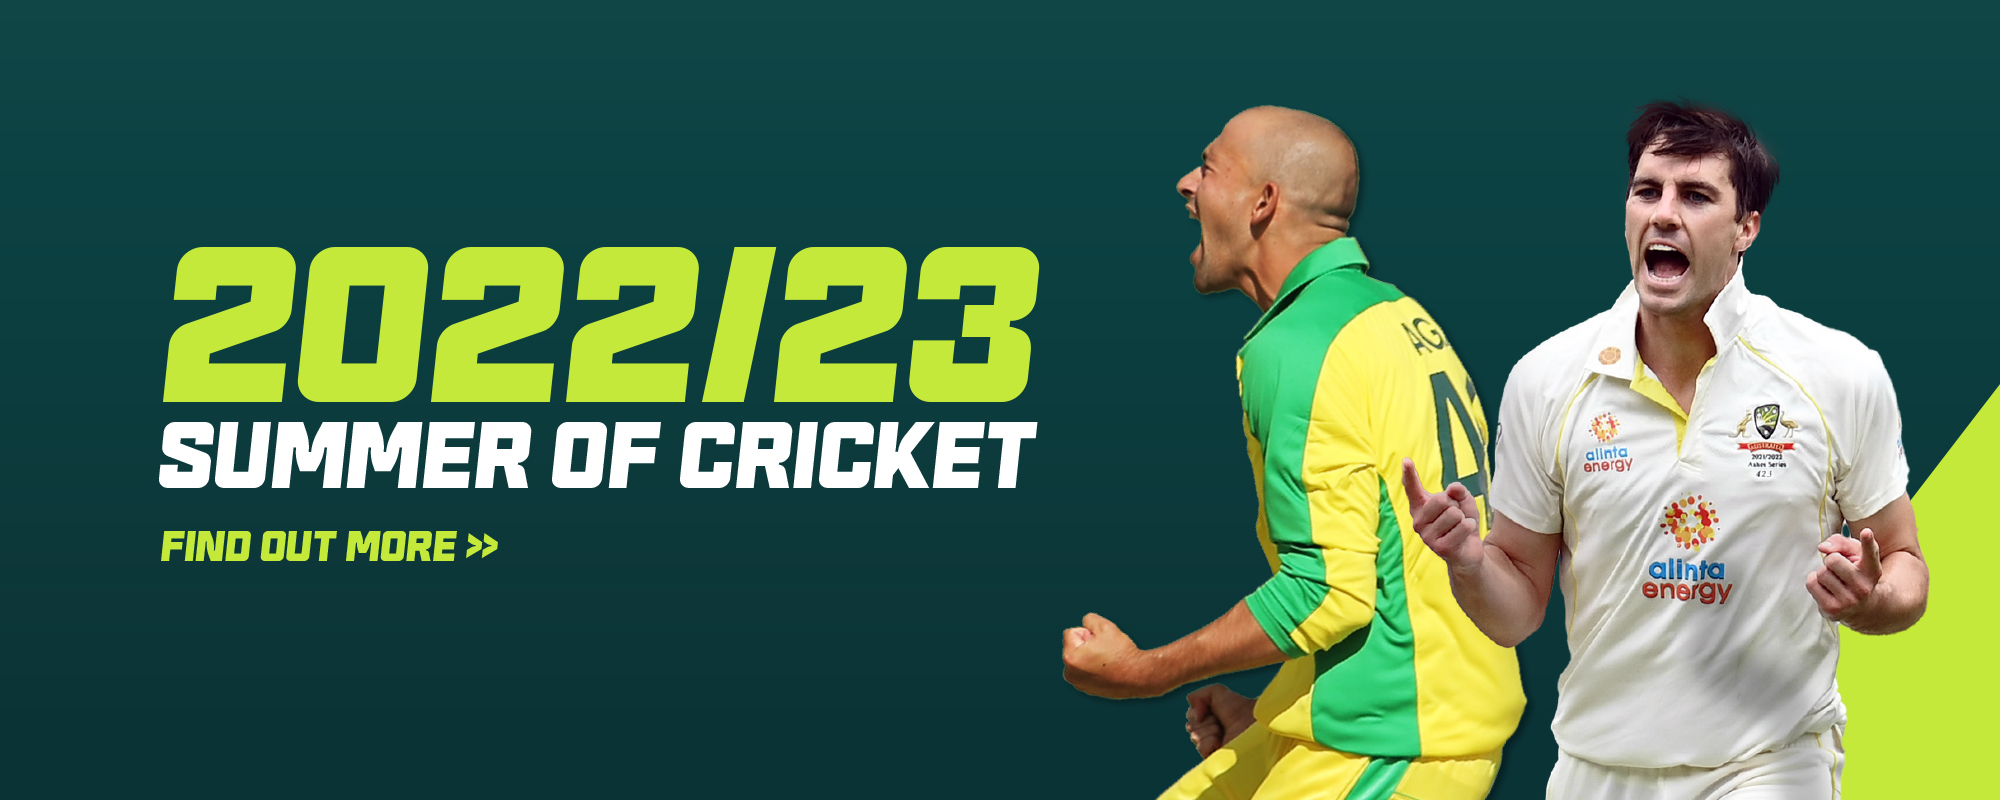 Cricket22